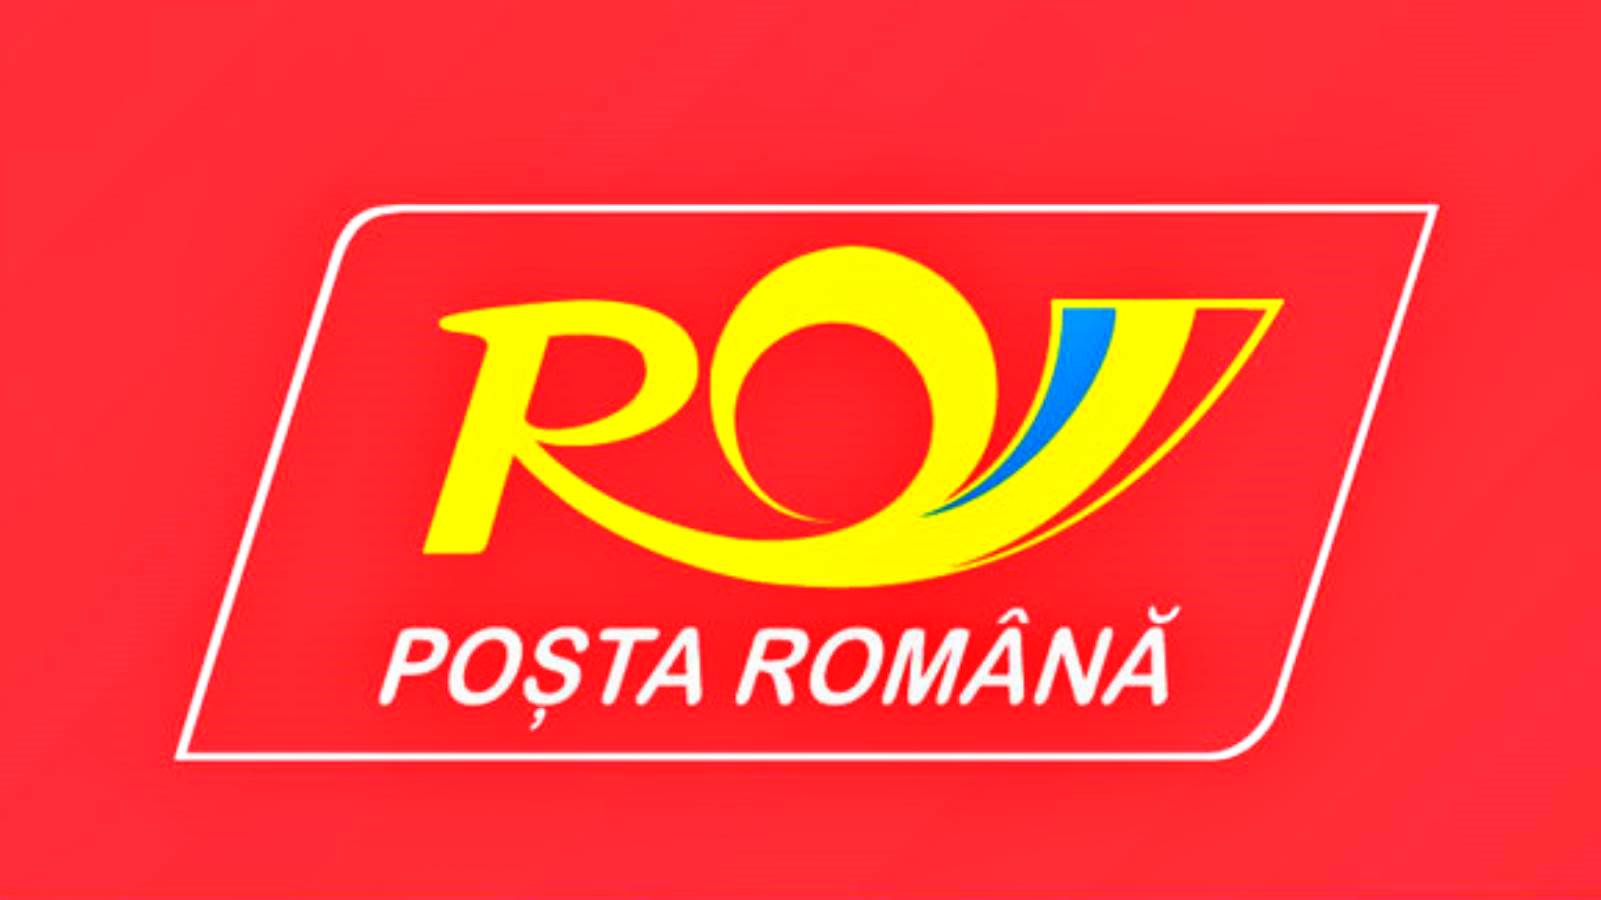 Środki ogłoszone przez Pocztę Rumuńską dla Rumunów w całym kraju